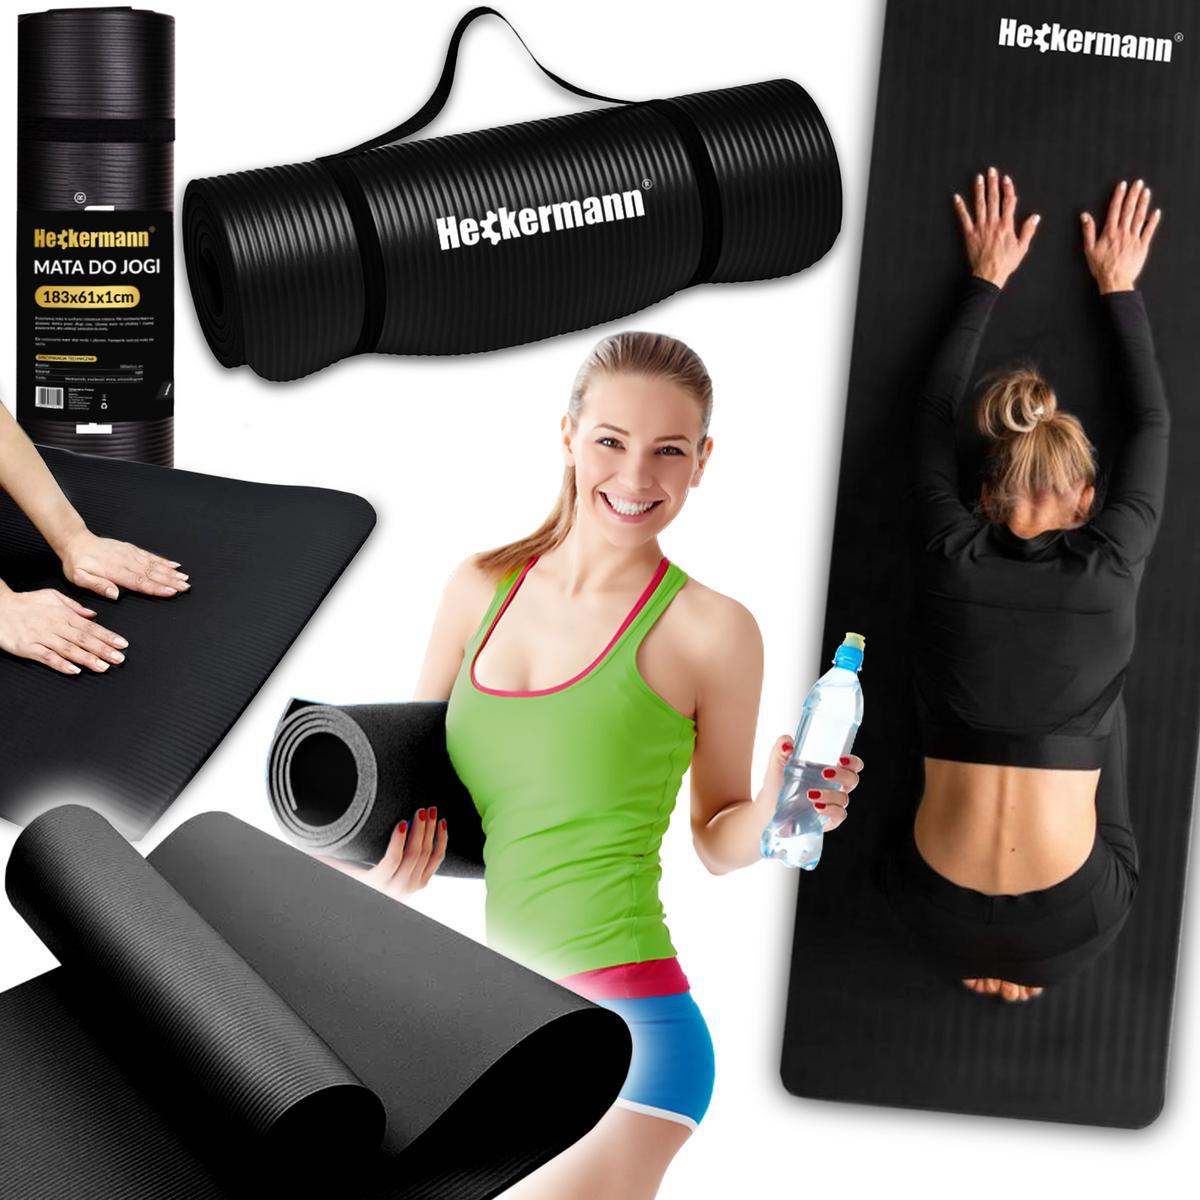 Mata do jogi antypoślizgowa kauczukowa do ćwiczeń Heckermann® 183x61x1cm nr. 1